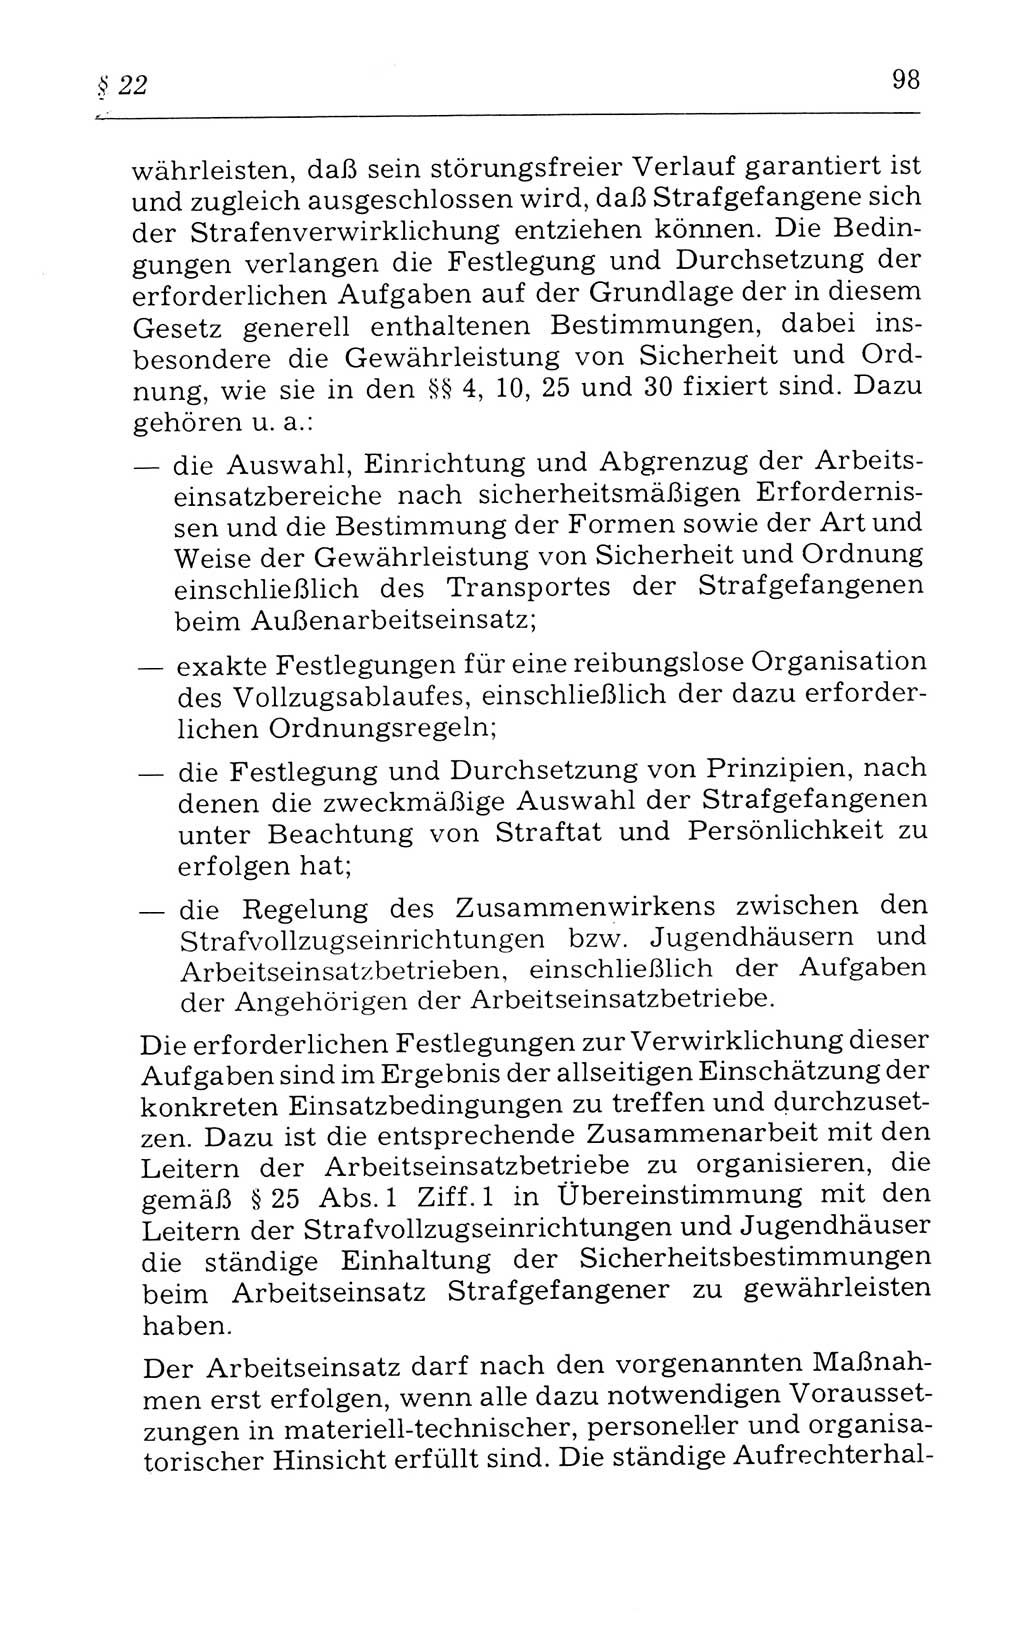 Kommentar zum Strafvollzugsgesetz [(StVG) Deutsche Demokratische Republik (DDR)] 1980, Seite 98 (Komm. StVG DDR 1980, S. 98)